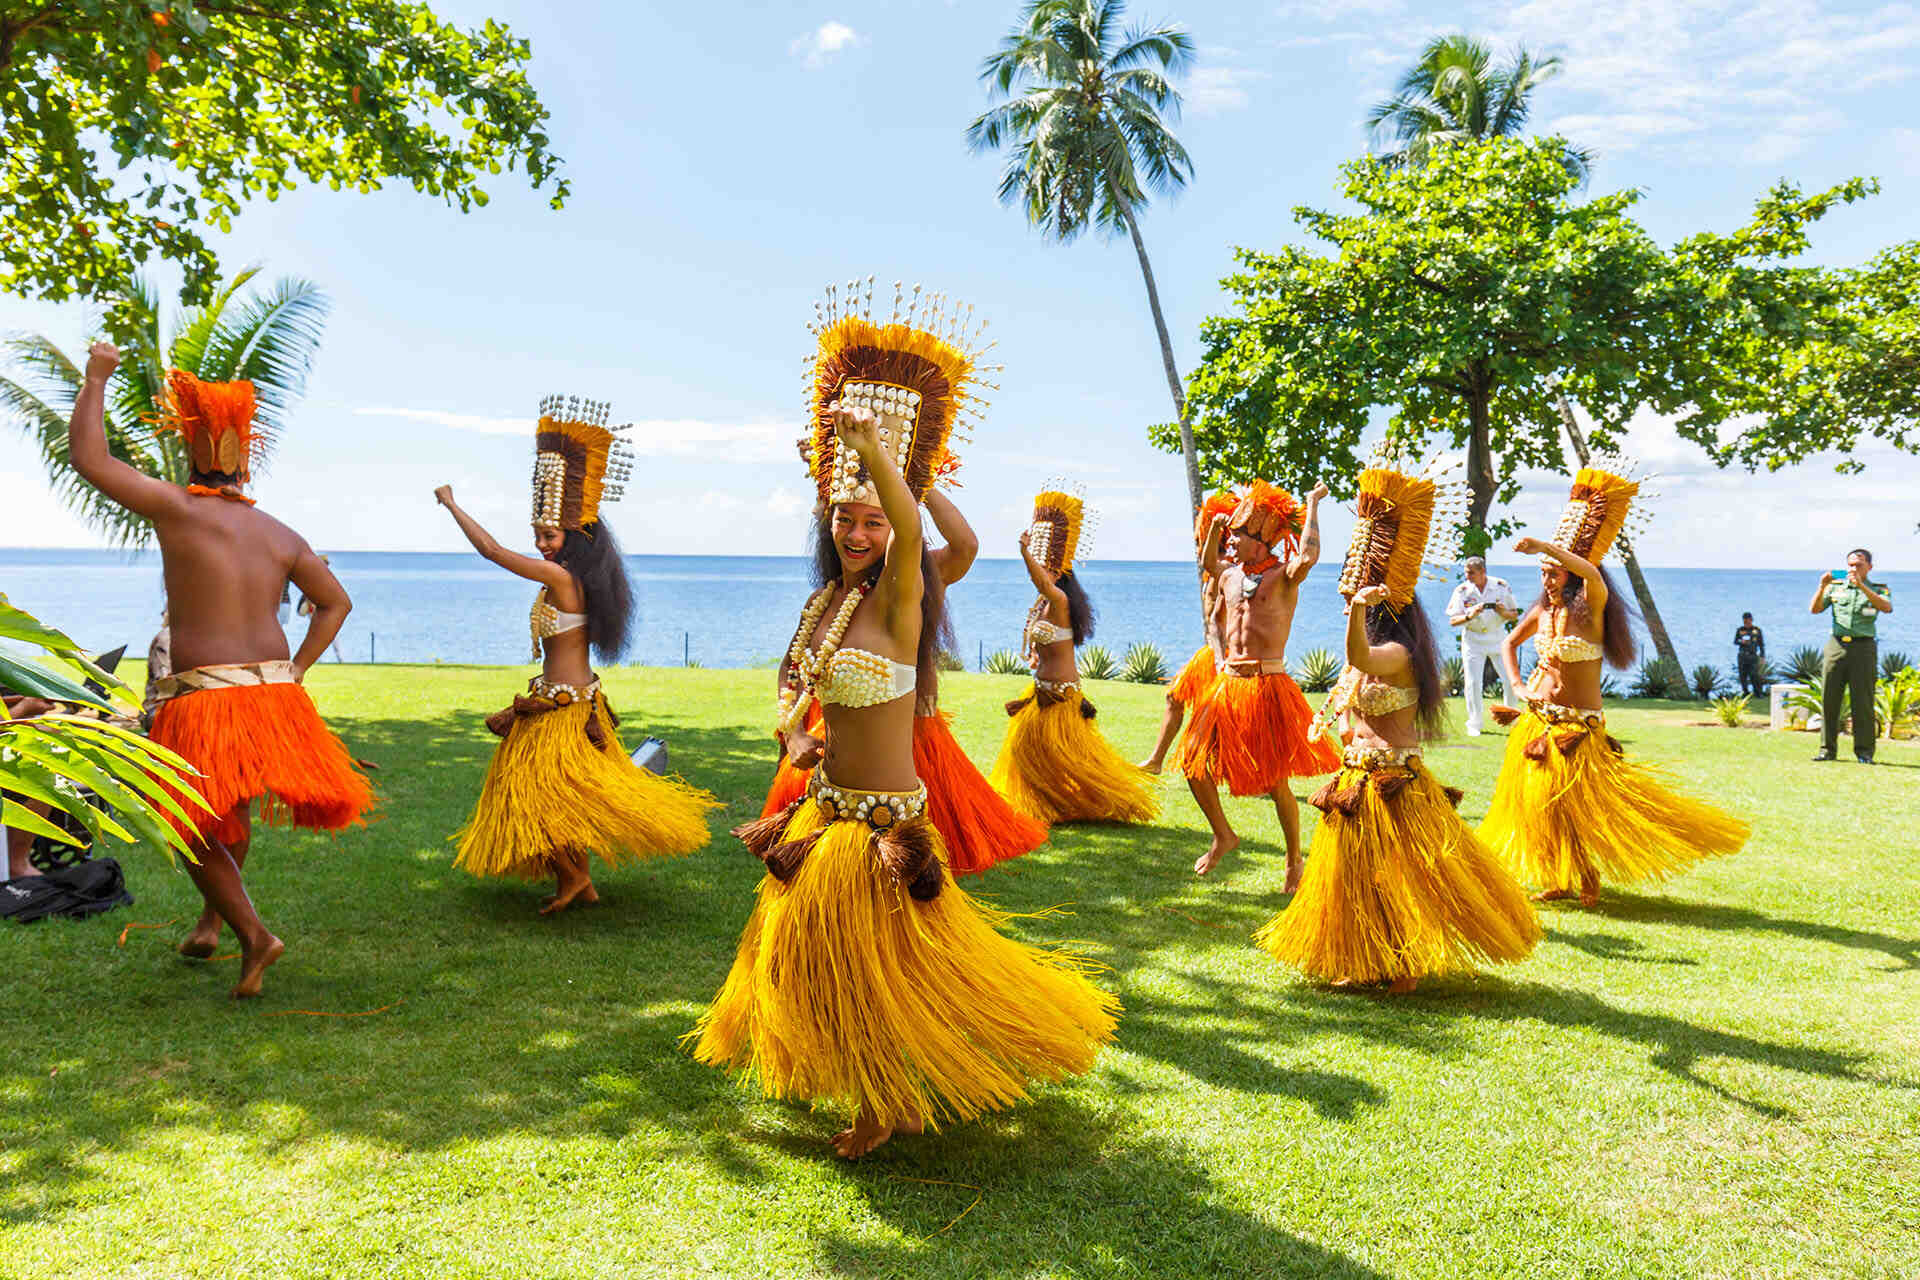 Welches Unternehmen soll nach Tahiti reisen?